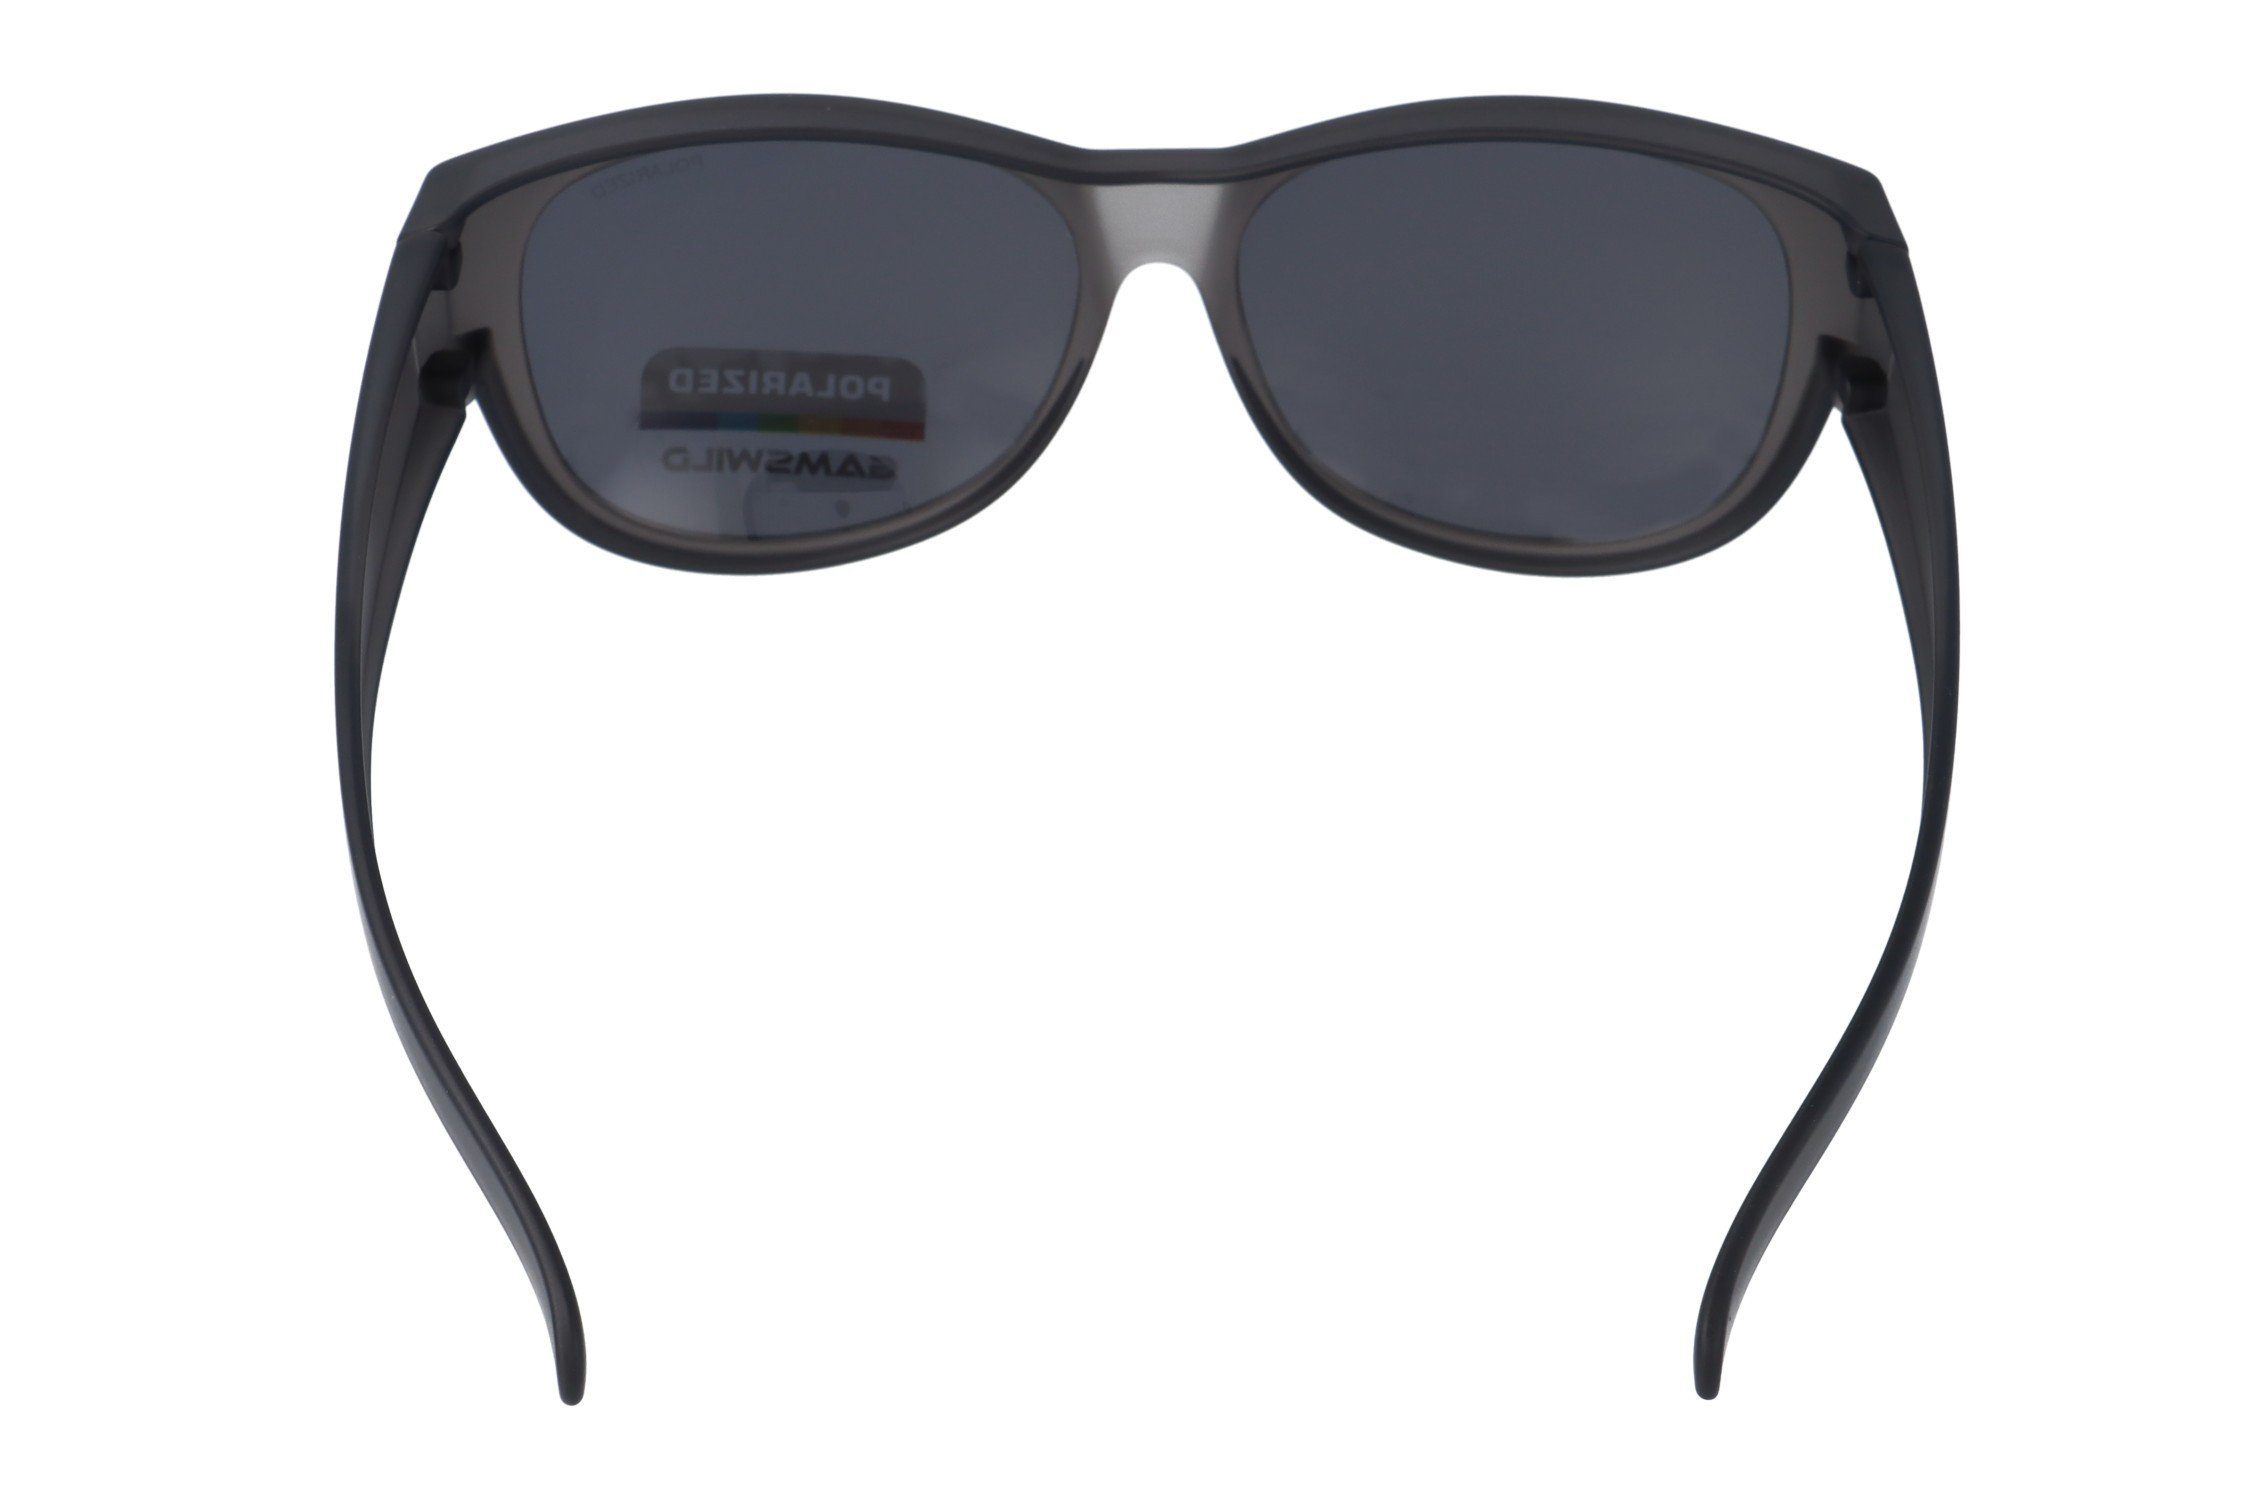 Gamswild Sonnenbrille polarisiert, Überbrille Damen Sportbrille universelle schwarz, grau-transparent Herren, grau WS4032 braun, Passform